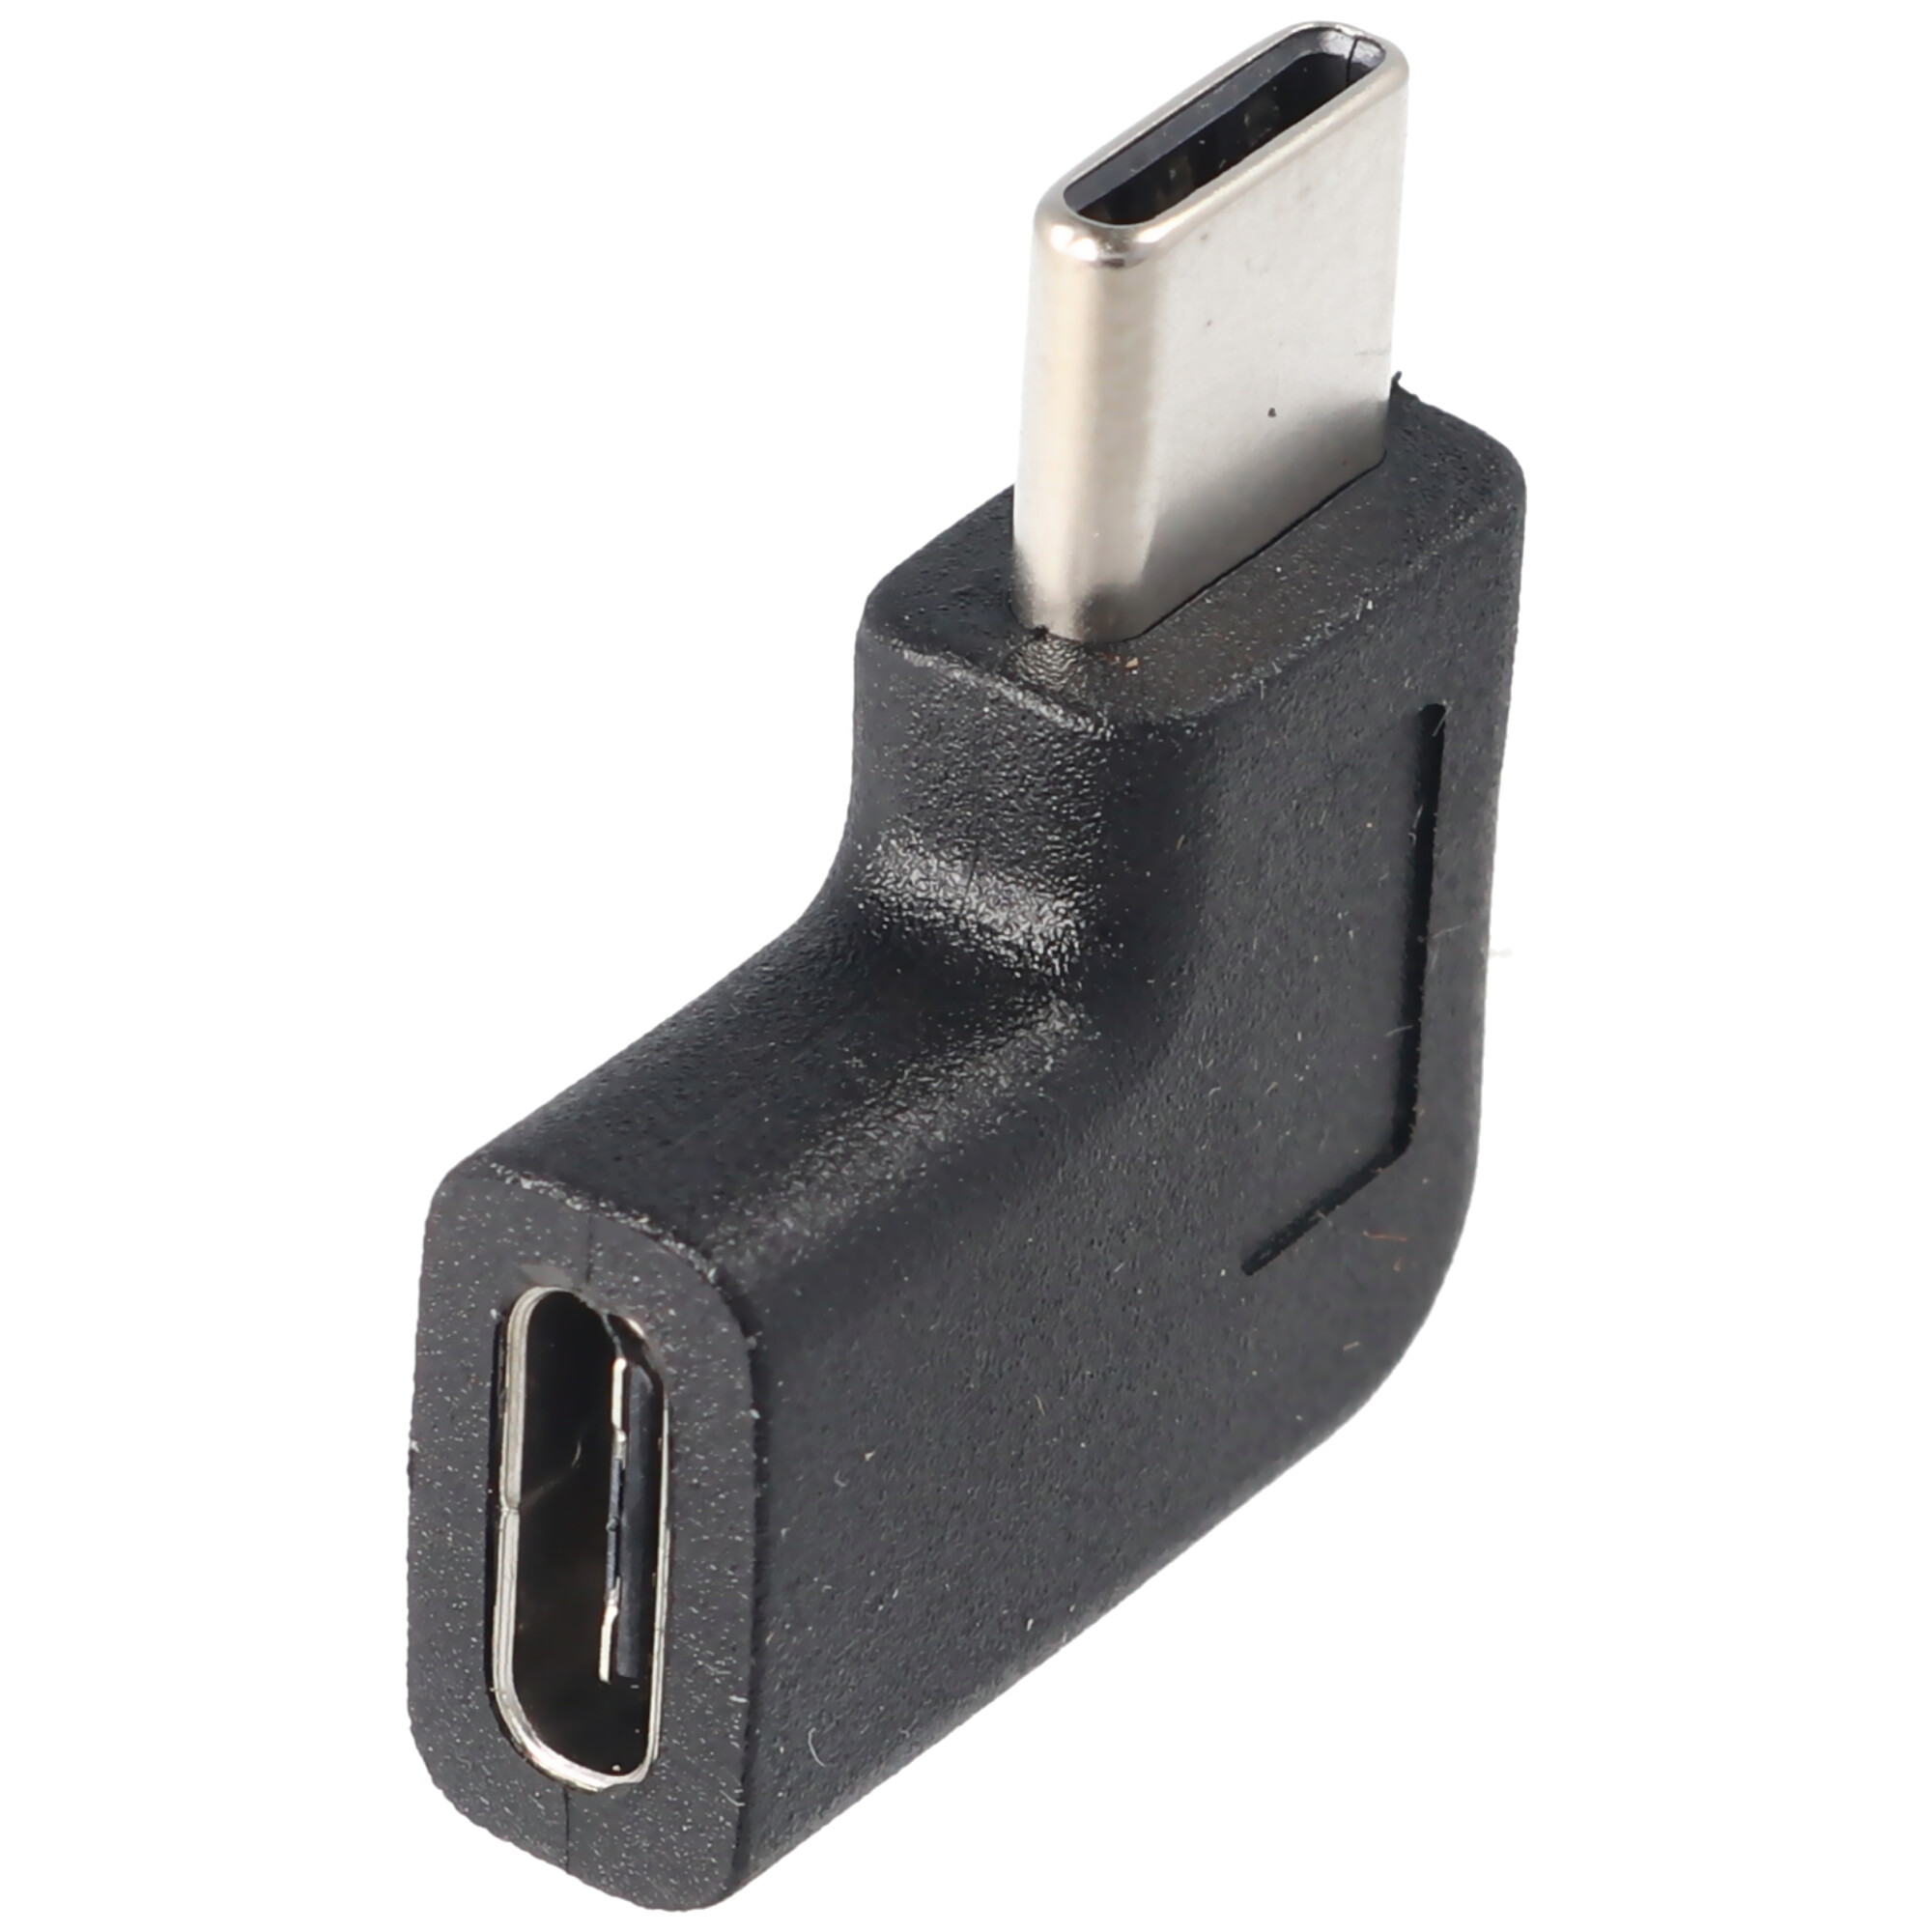 Adapter USB-C auf USB-C mit 90 Grad Winkel schwarz, abgewinkelter Adapter verlängert das USB-C, geeignet für das MacBook mit USB-C Port